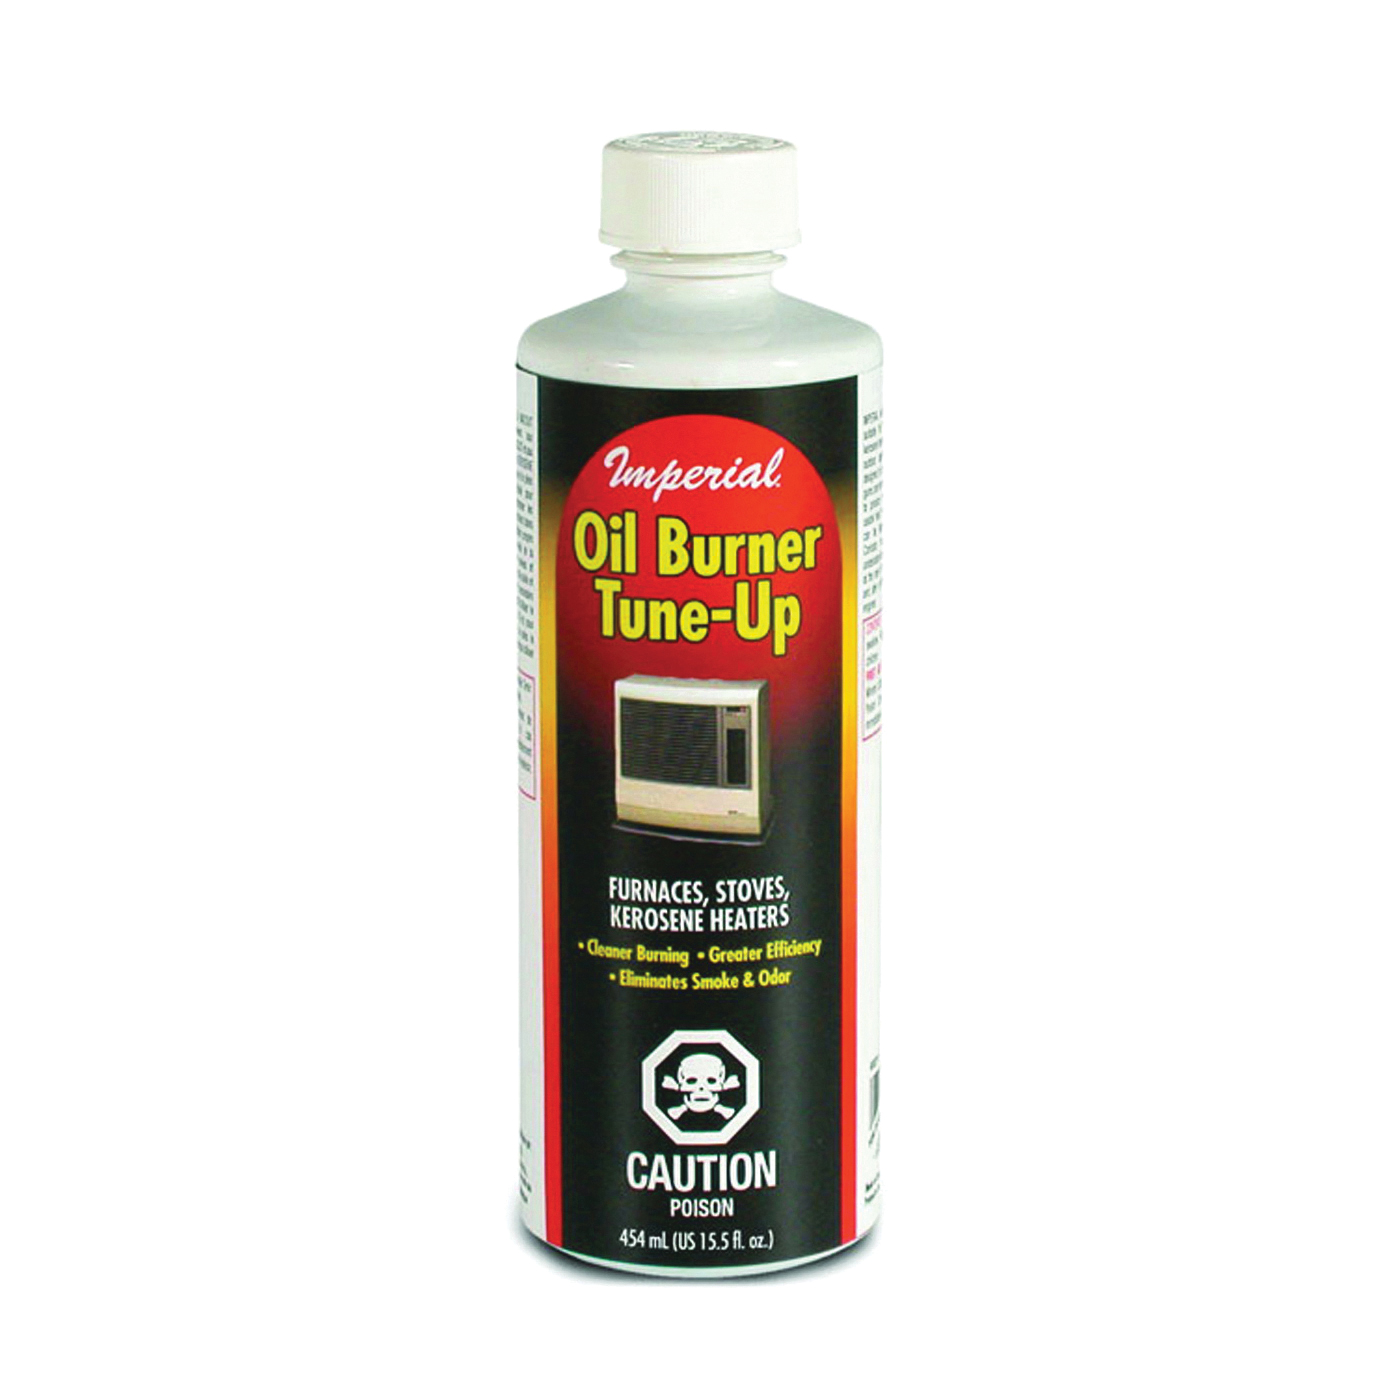 KK0218 Oil Burner Tune-Up, Light Brown